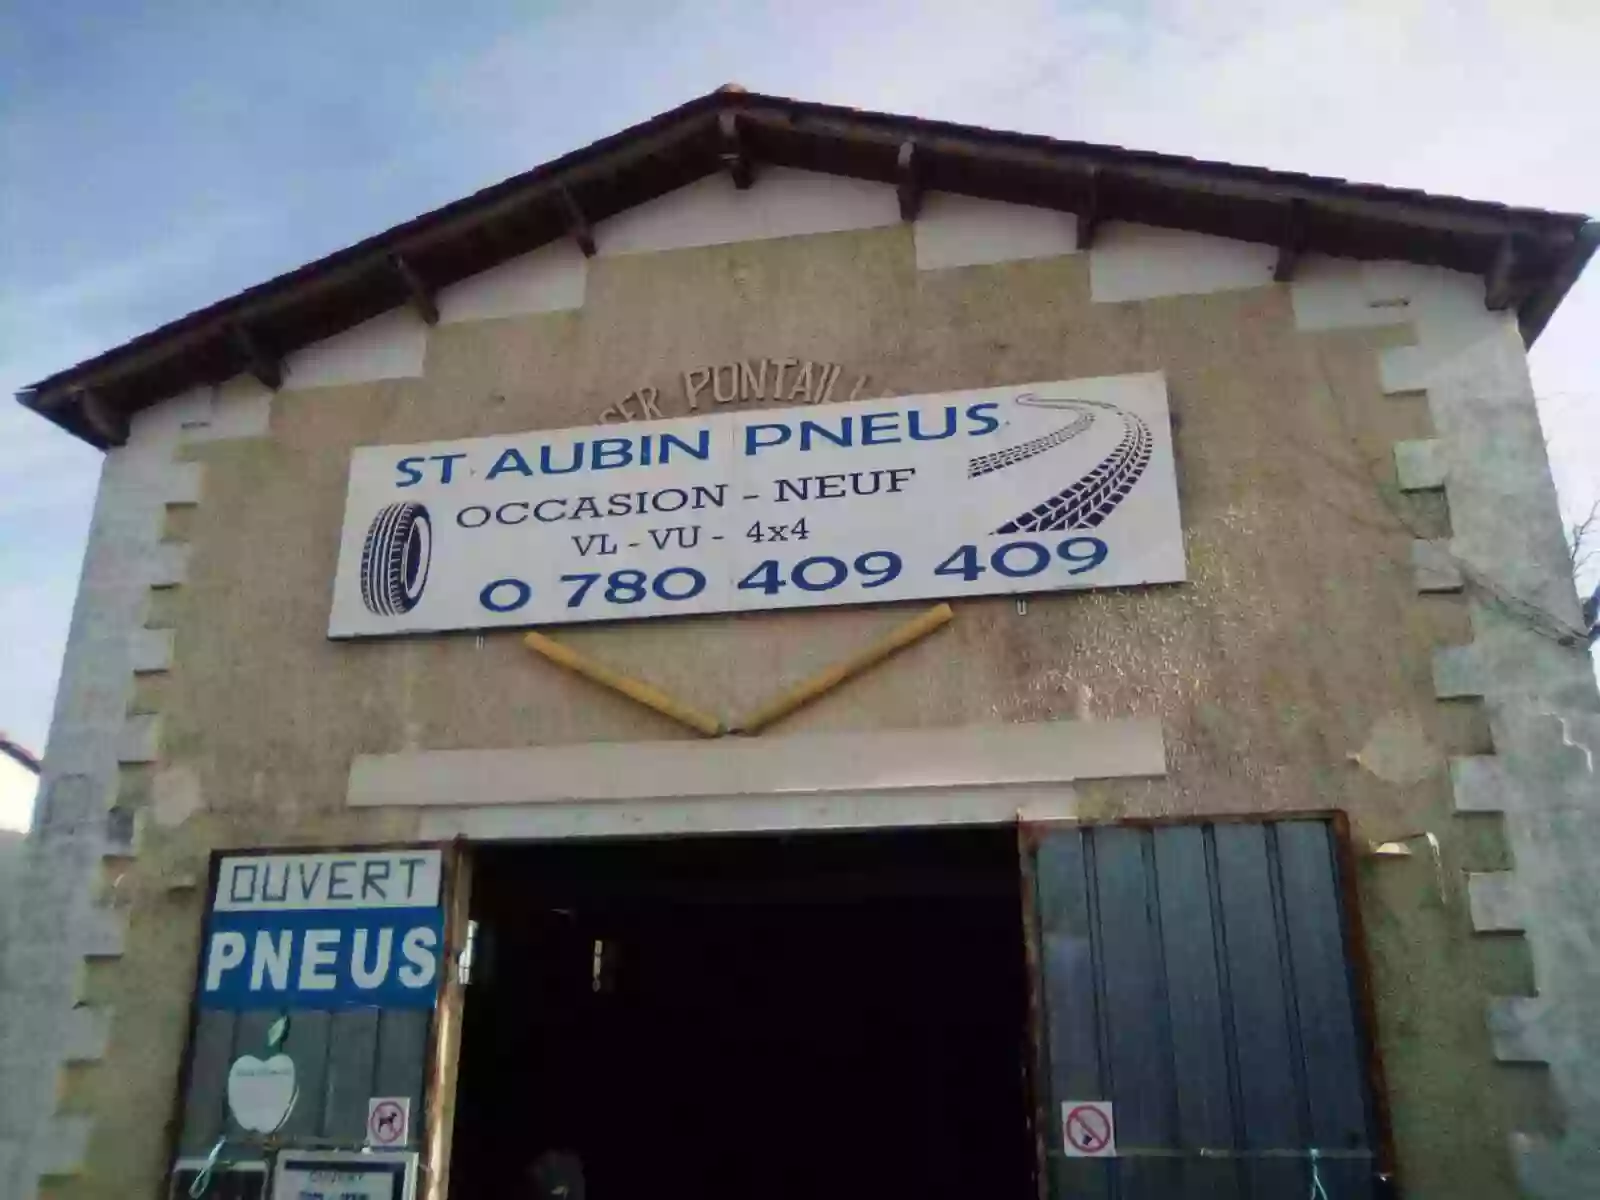 Saint-Aubin Pneus